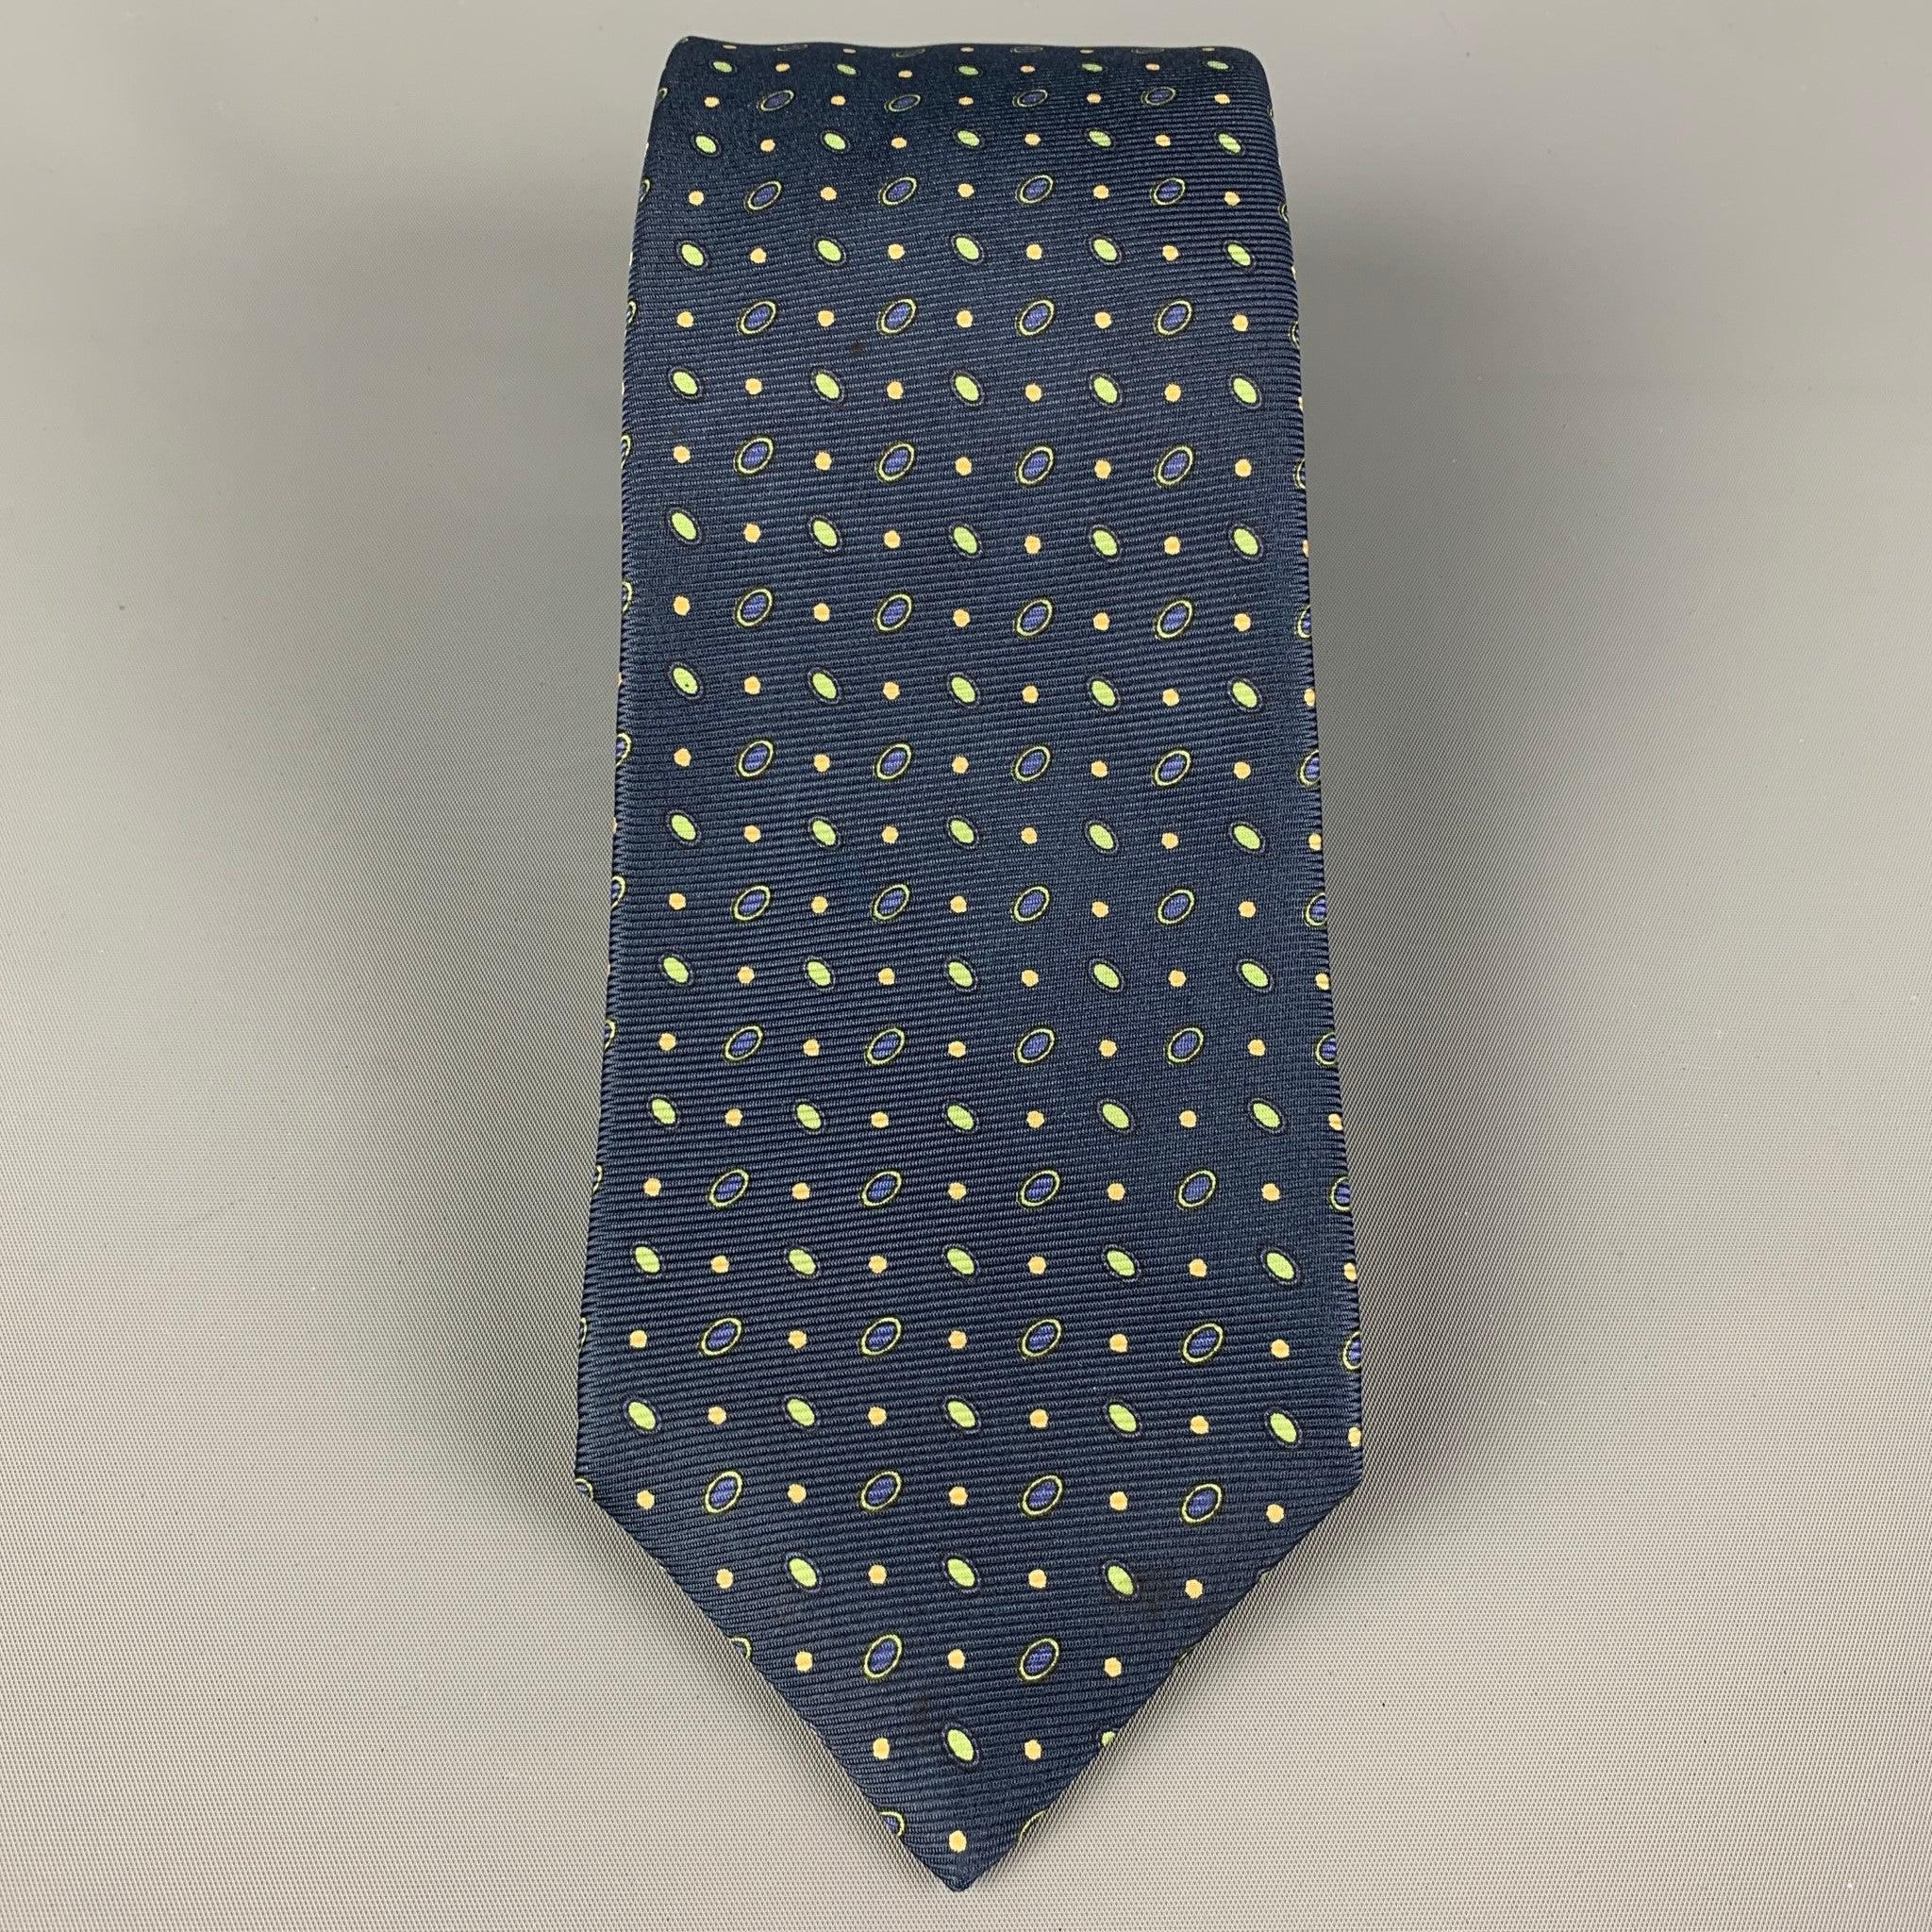 Die KITON Krawatte ist aus marineblauer und grüner Seide mit einem Allover-Punktdruck. Hergestellt in Italien. Sehr guter gebrauchter Zustand. Breite: 3,75 Zoll  Länge: 62 Zoll 


  
  
 
Sui Generis-Referenz: 120385
Kategorie: Krawatte
Mehr